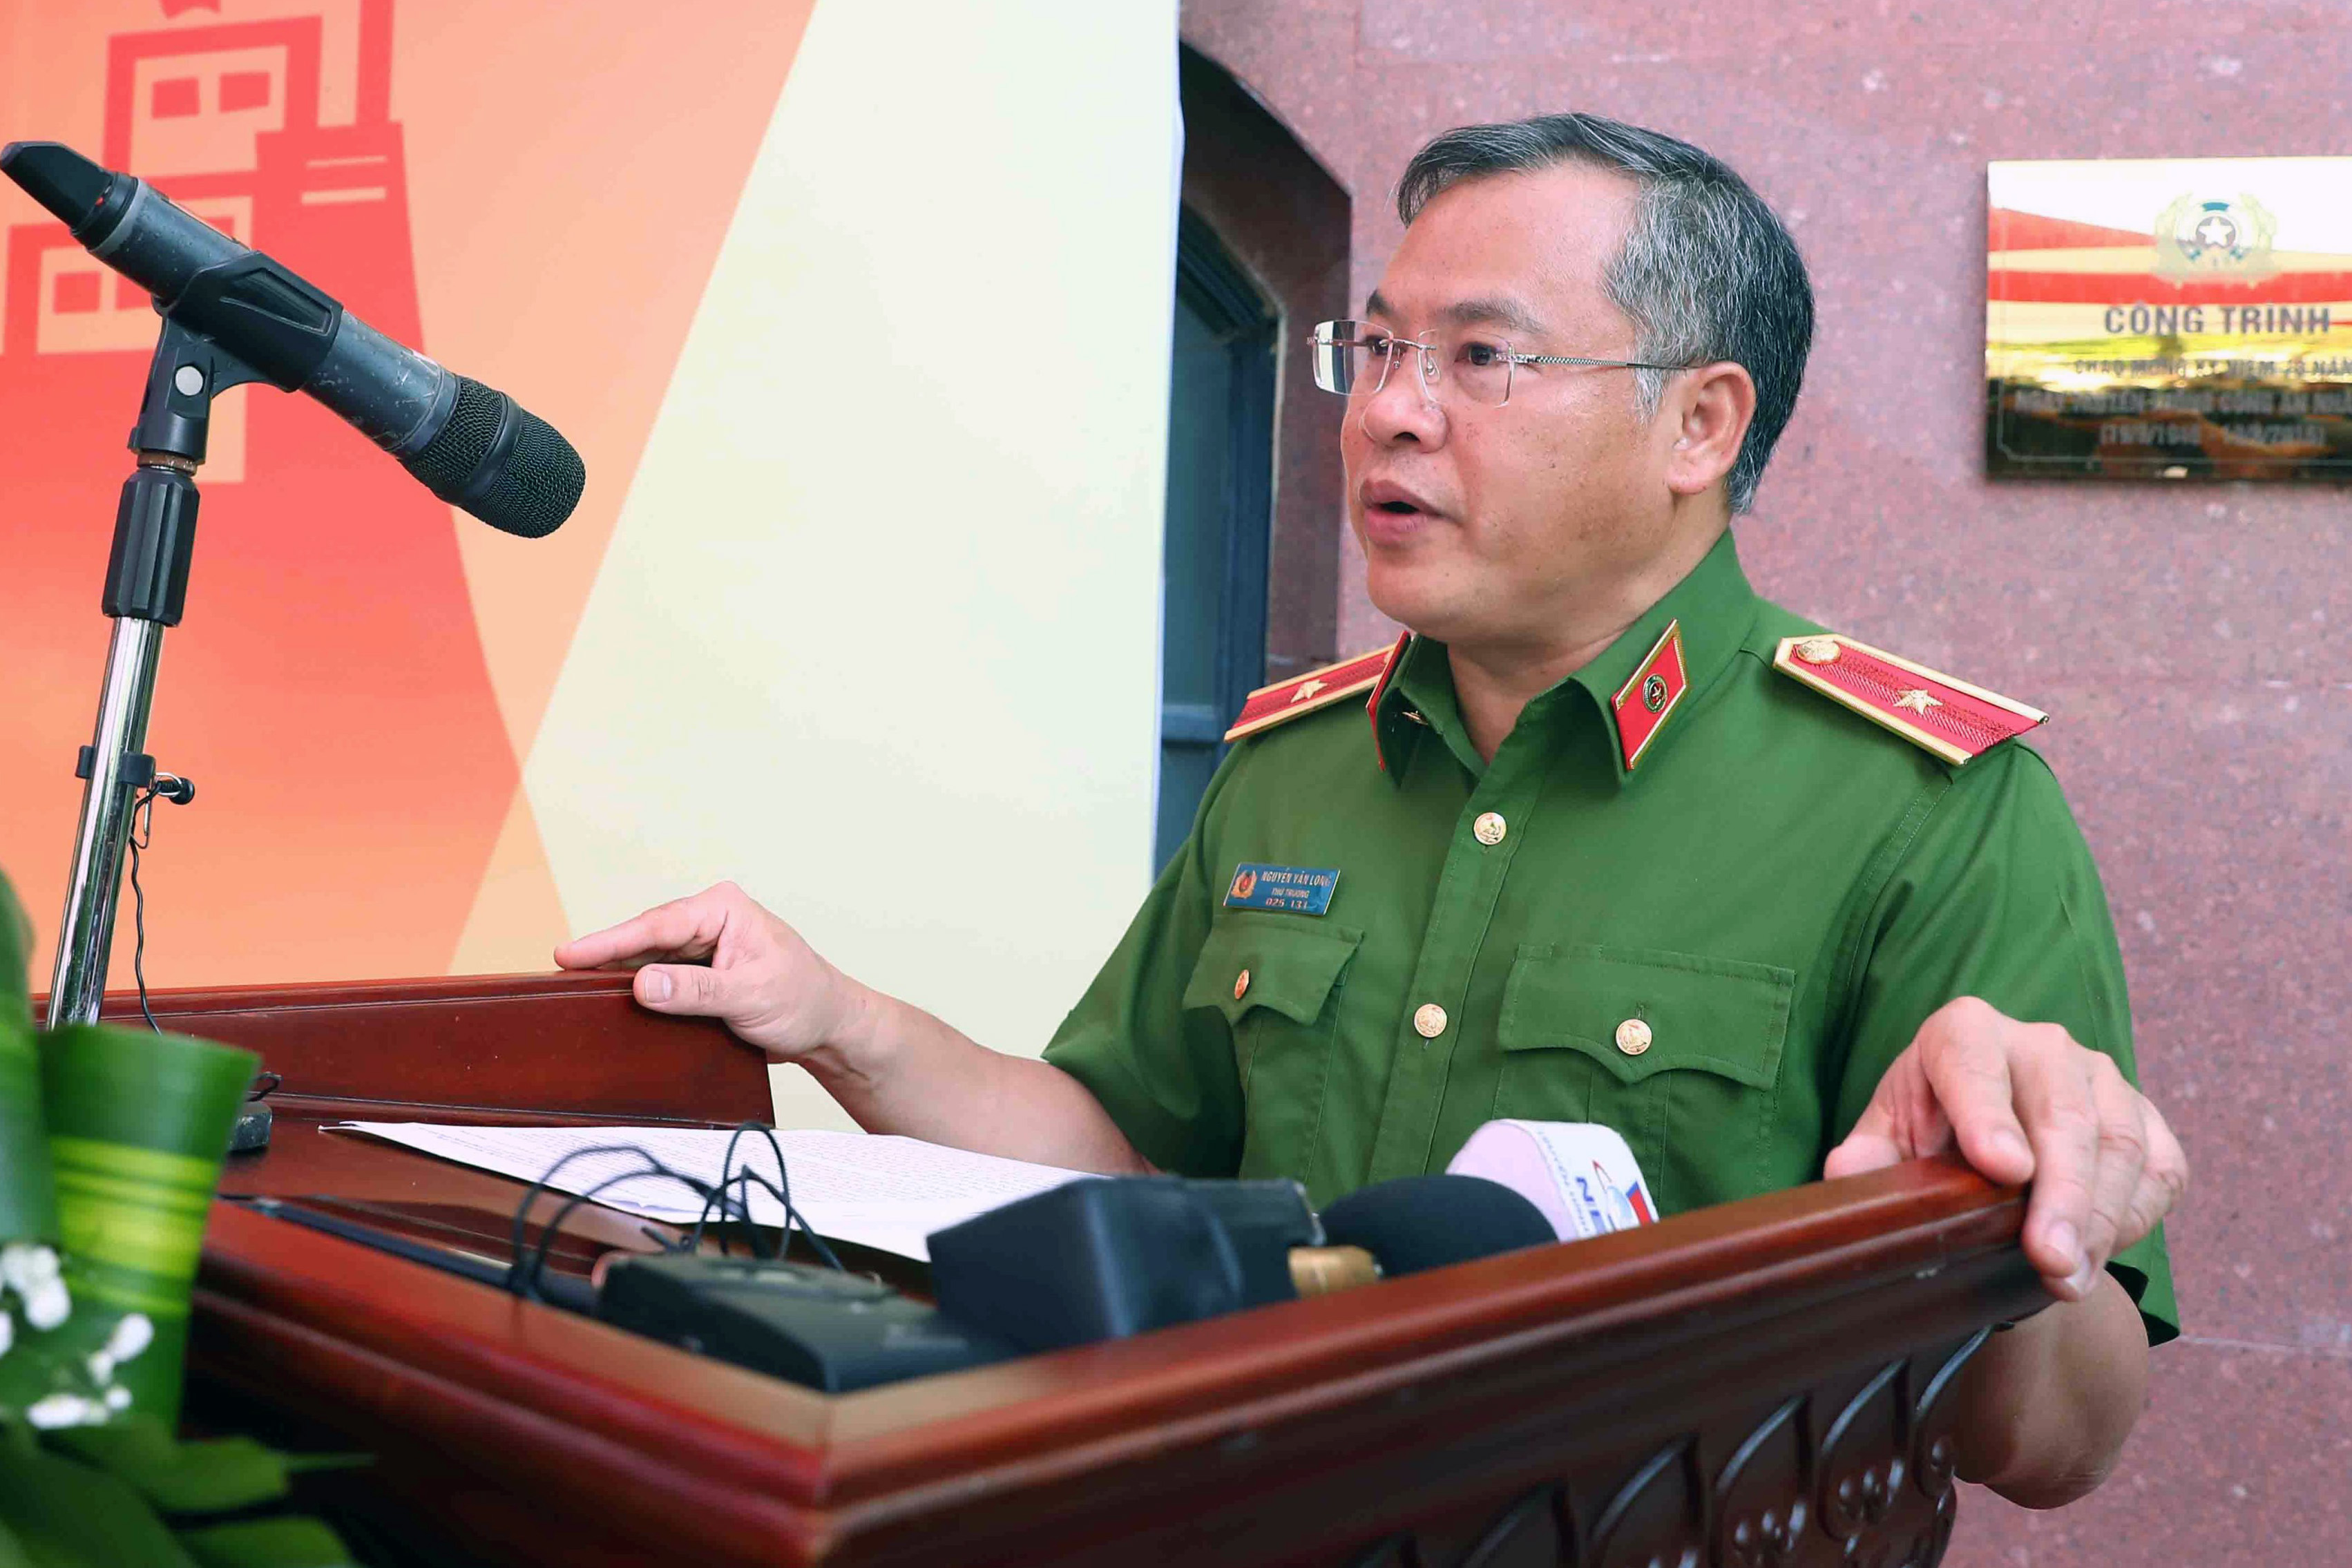 Thiếu tướng Nguyễn Văn Long - Thứ trưởng Bộ Công an - phát biểu tại lễ khai mạc.